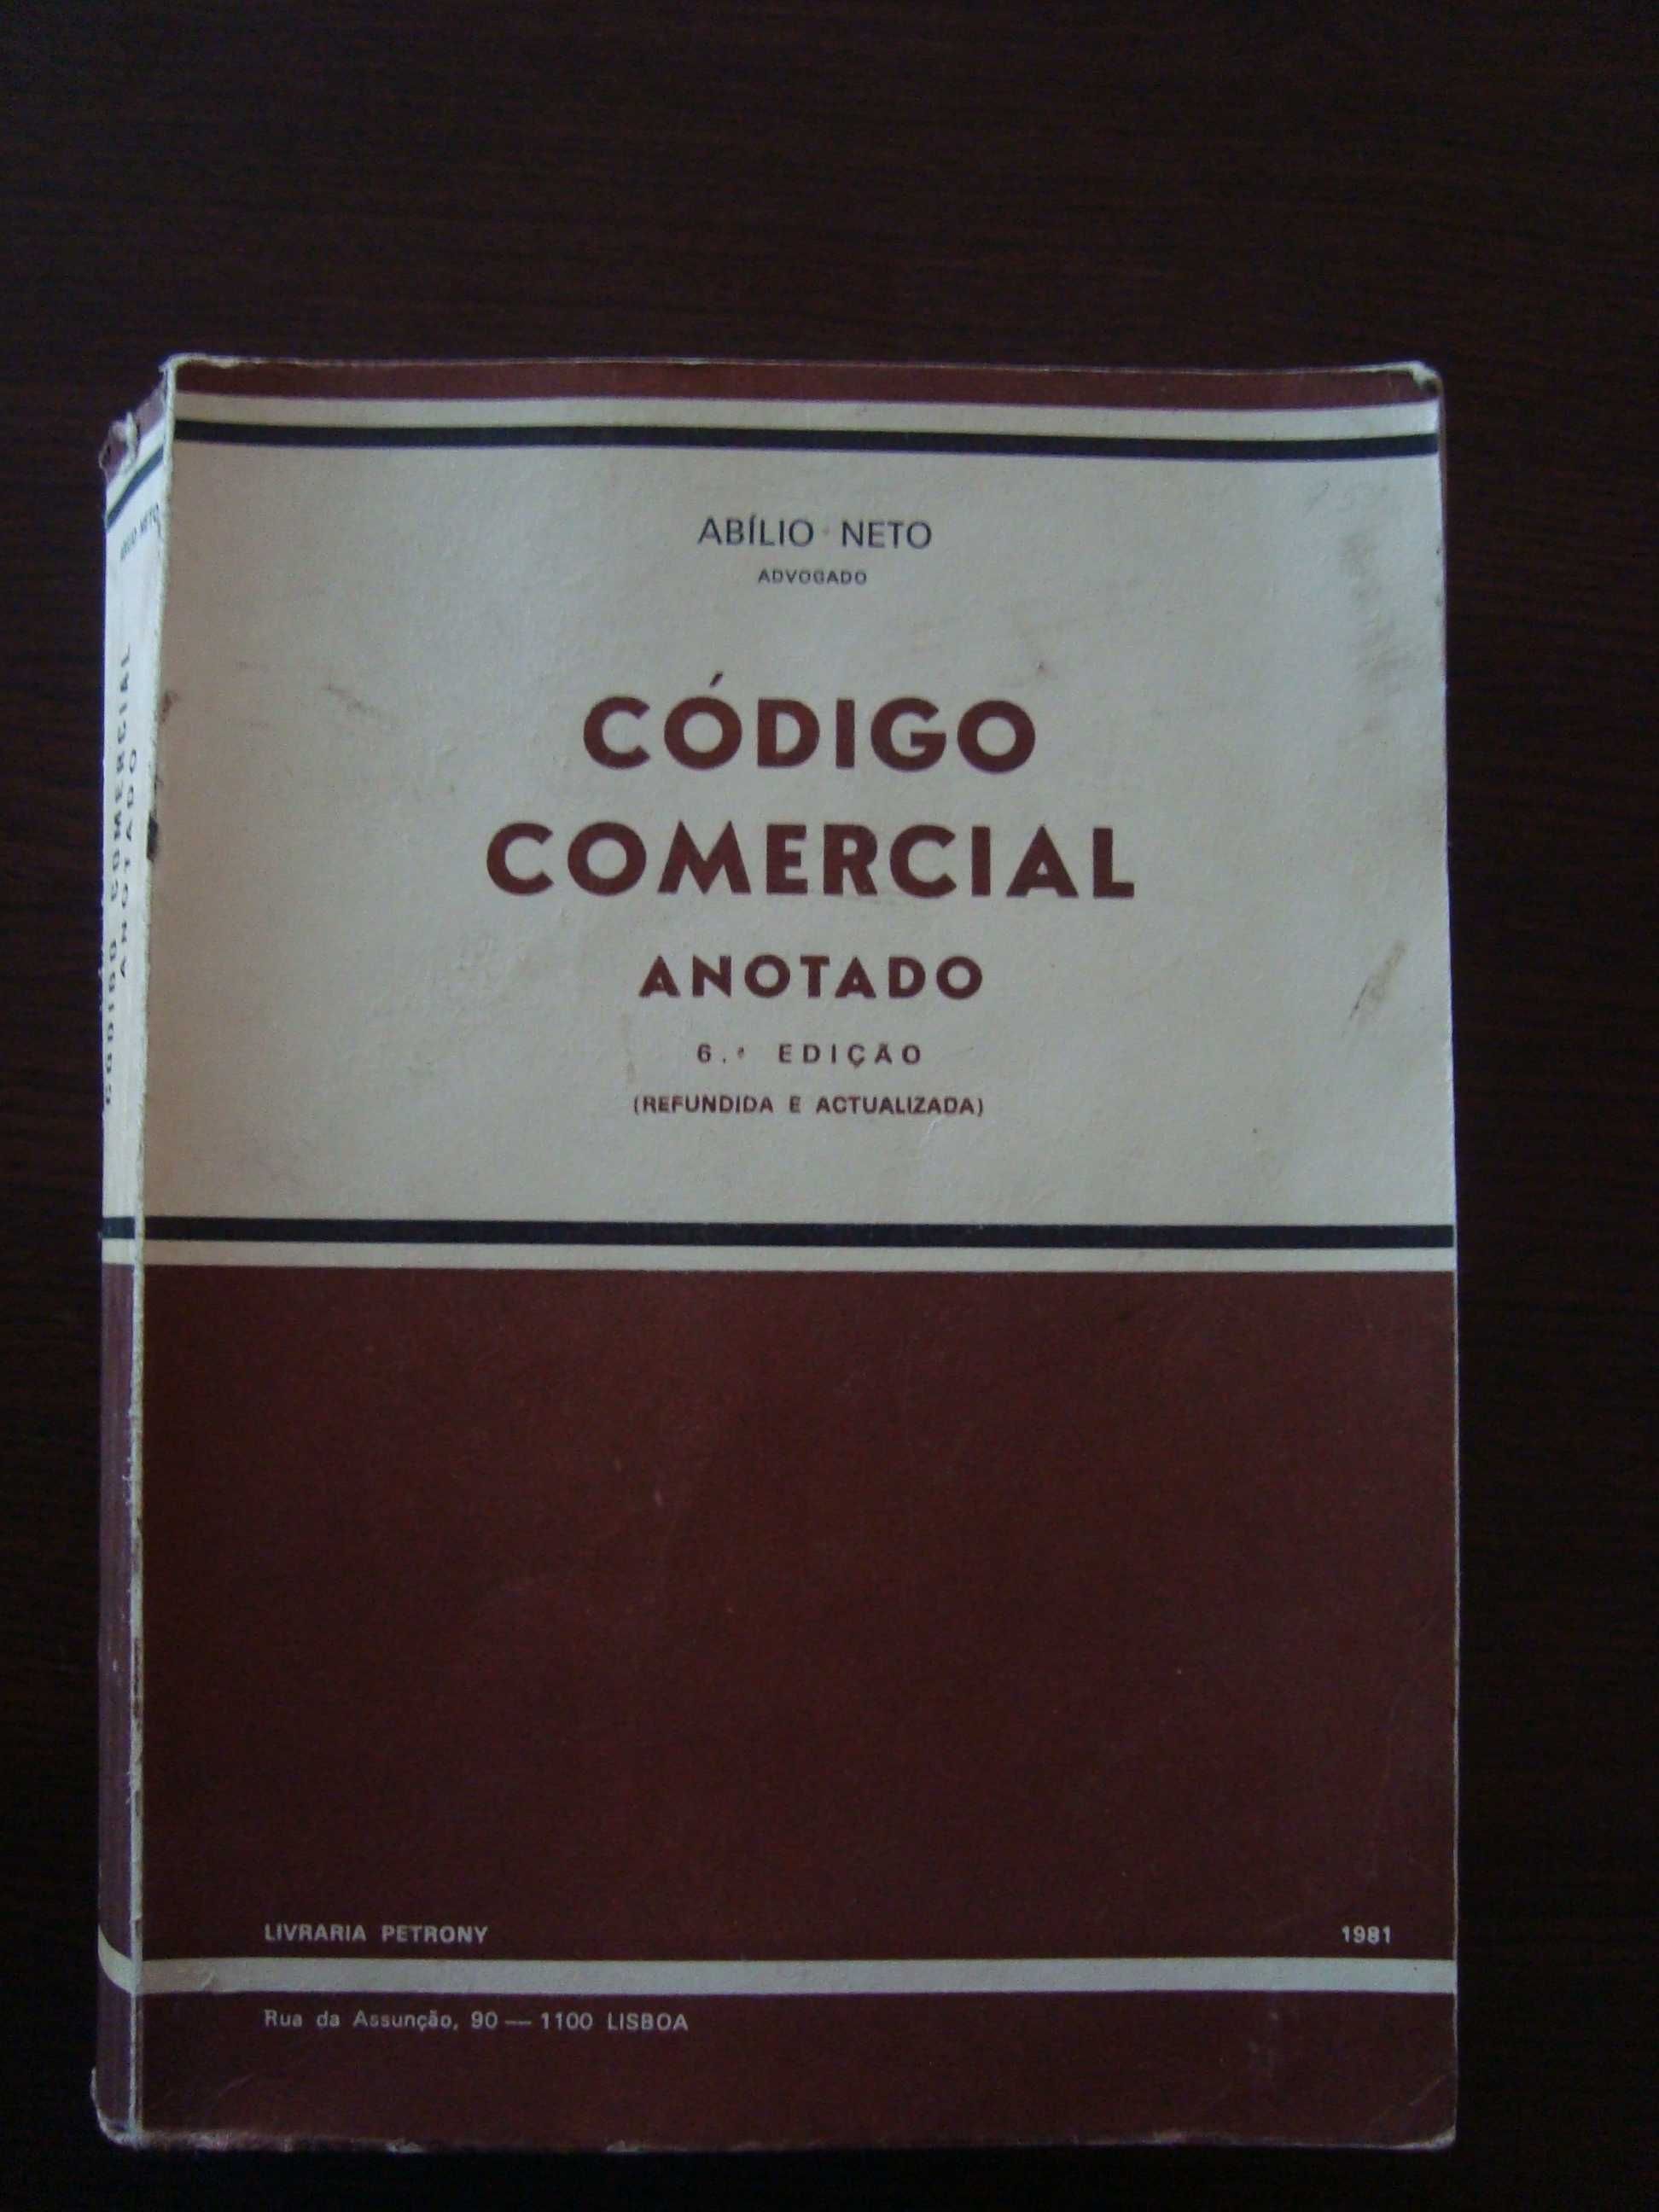 livro “Código Comercial Anotado” de 1981, do autor Abílio Neto.